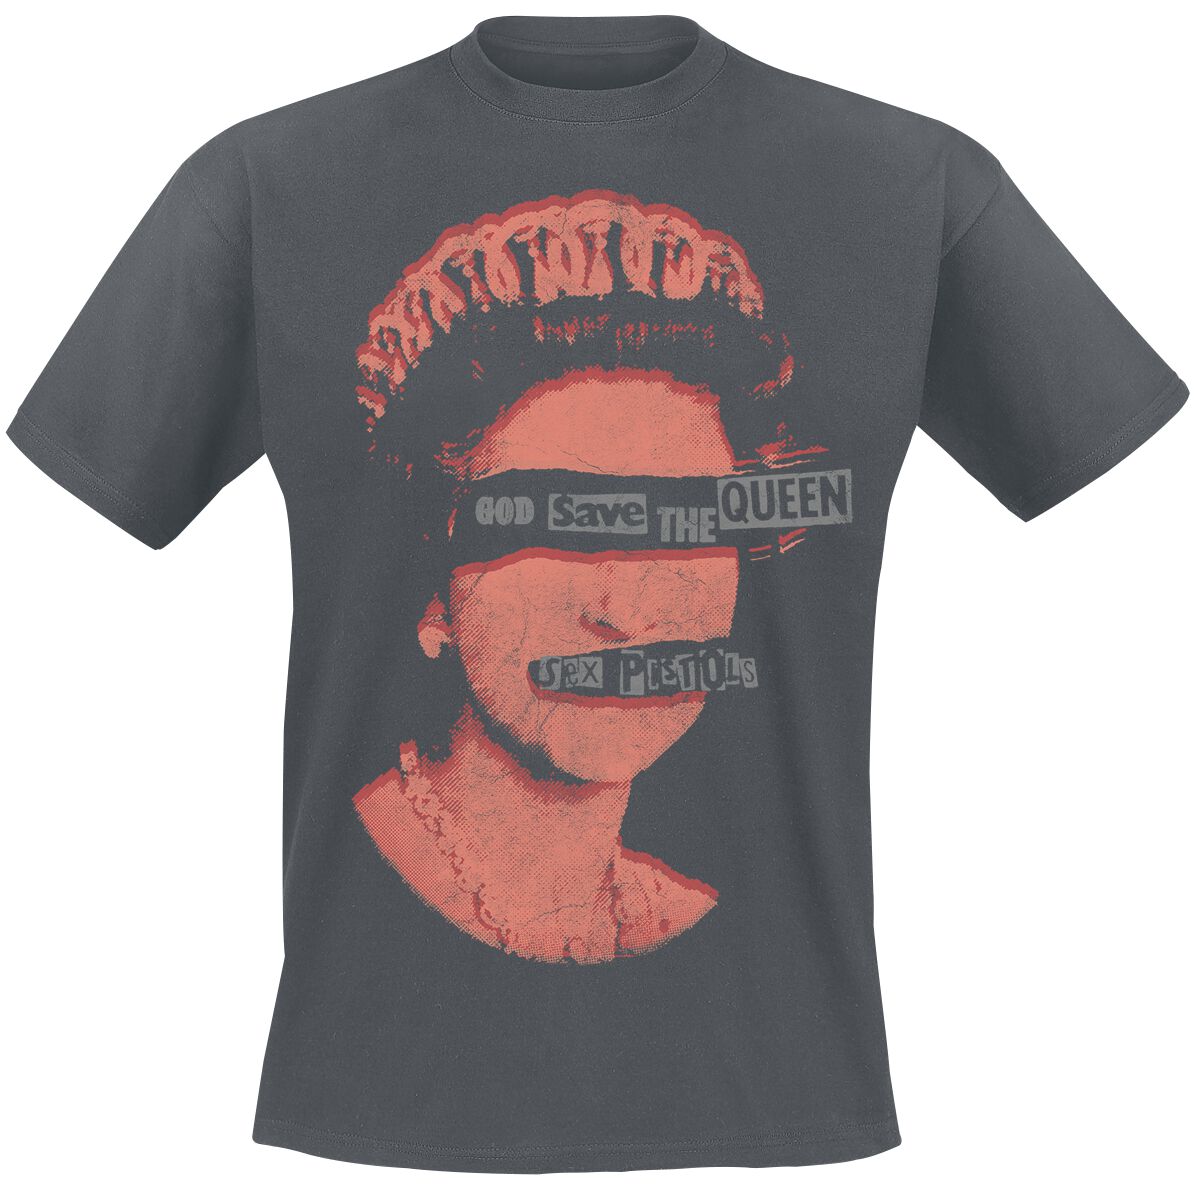 Sex Pistols T-Shirt - God Save The Queen - S bis XXL - für Männer - Größe XL - dunkelgrau  - Lizenziertes Merchandise!